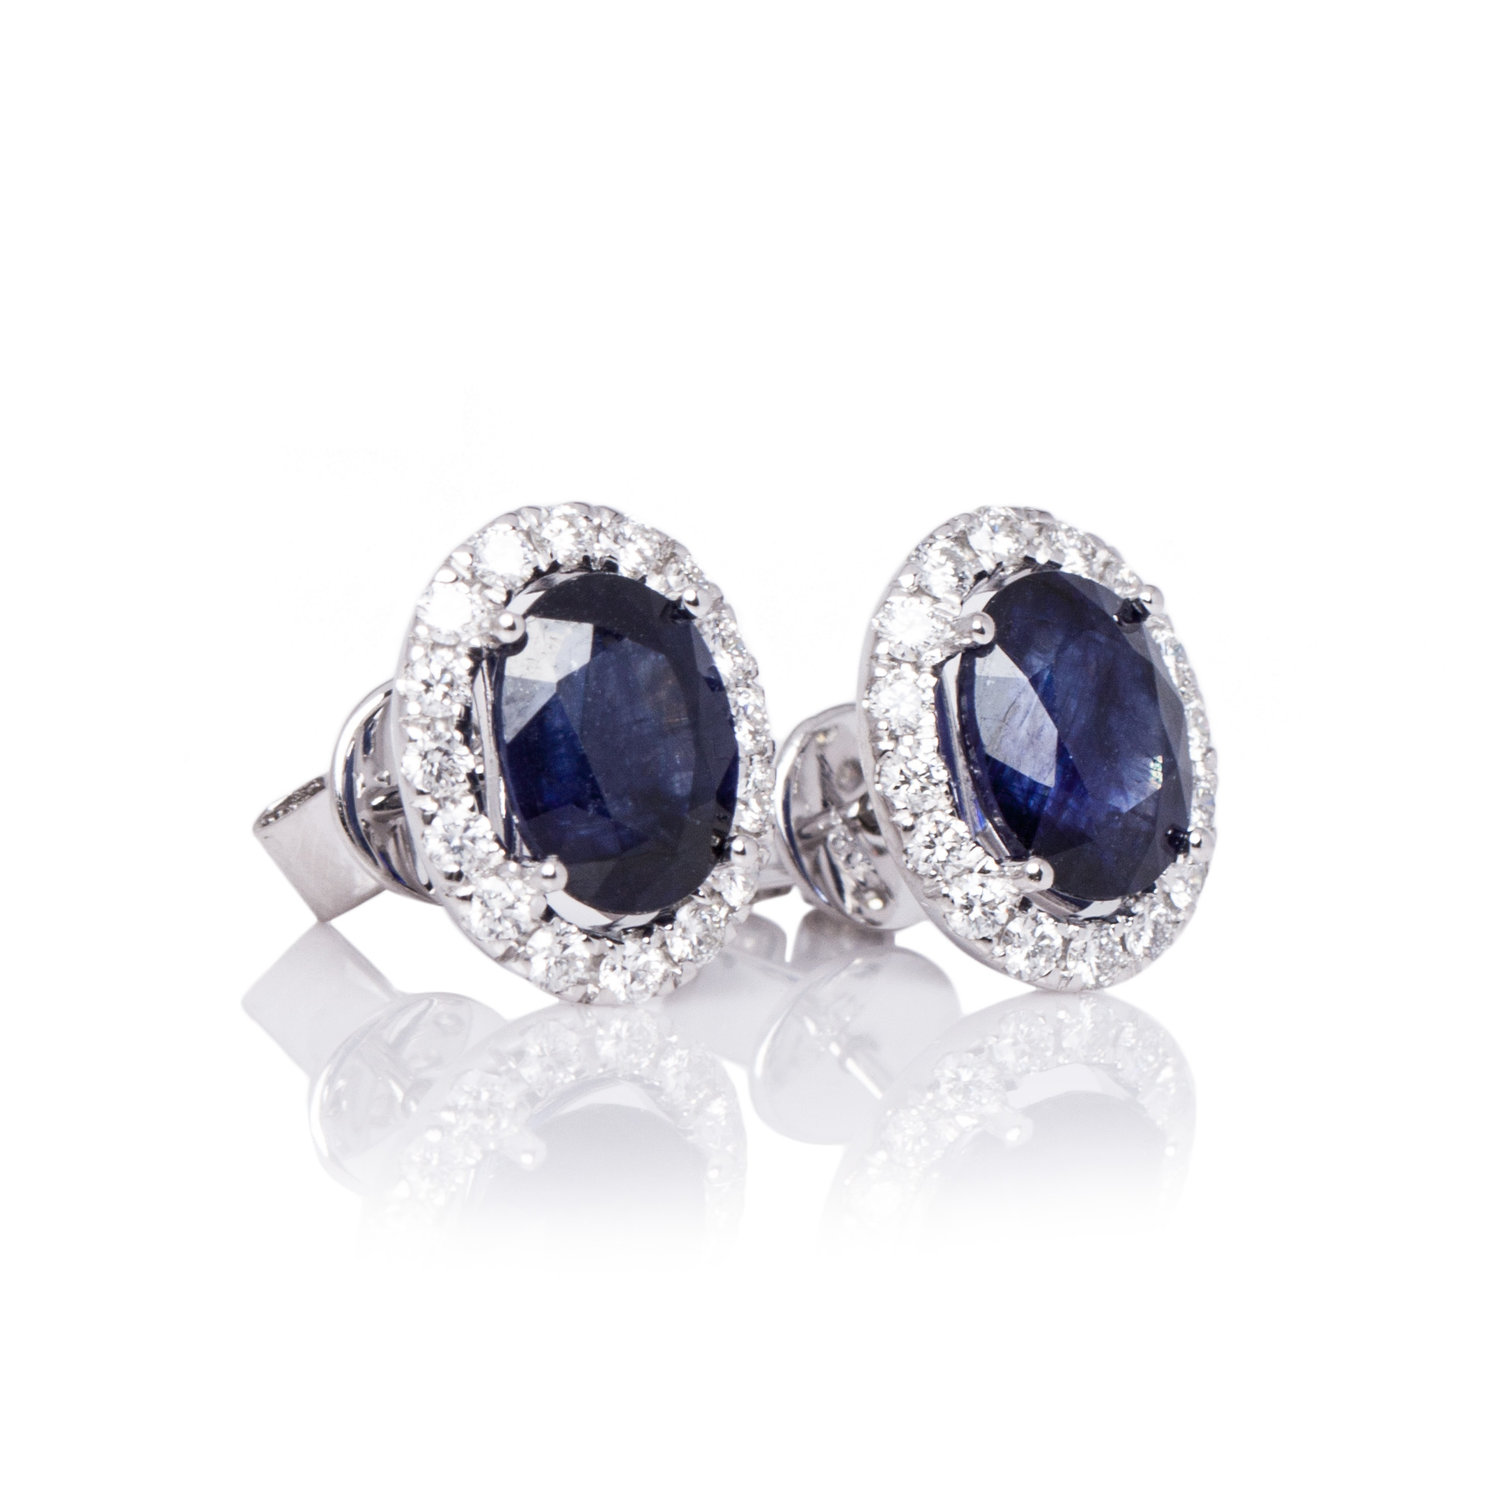 100-continental-jewels-manufacturers-earrings-cje000100-18k-white-gold-vvs1-diamonds-blue-sapphire-oval-earrings.jpg